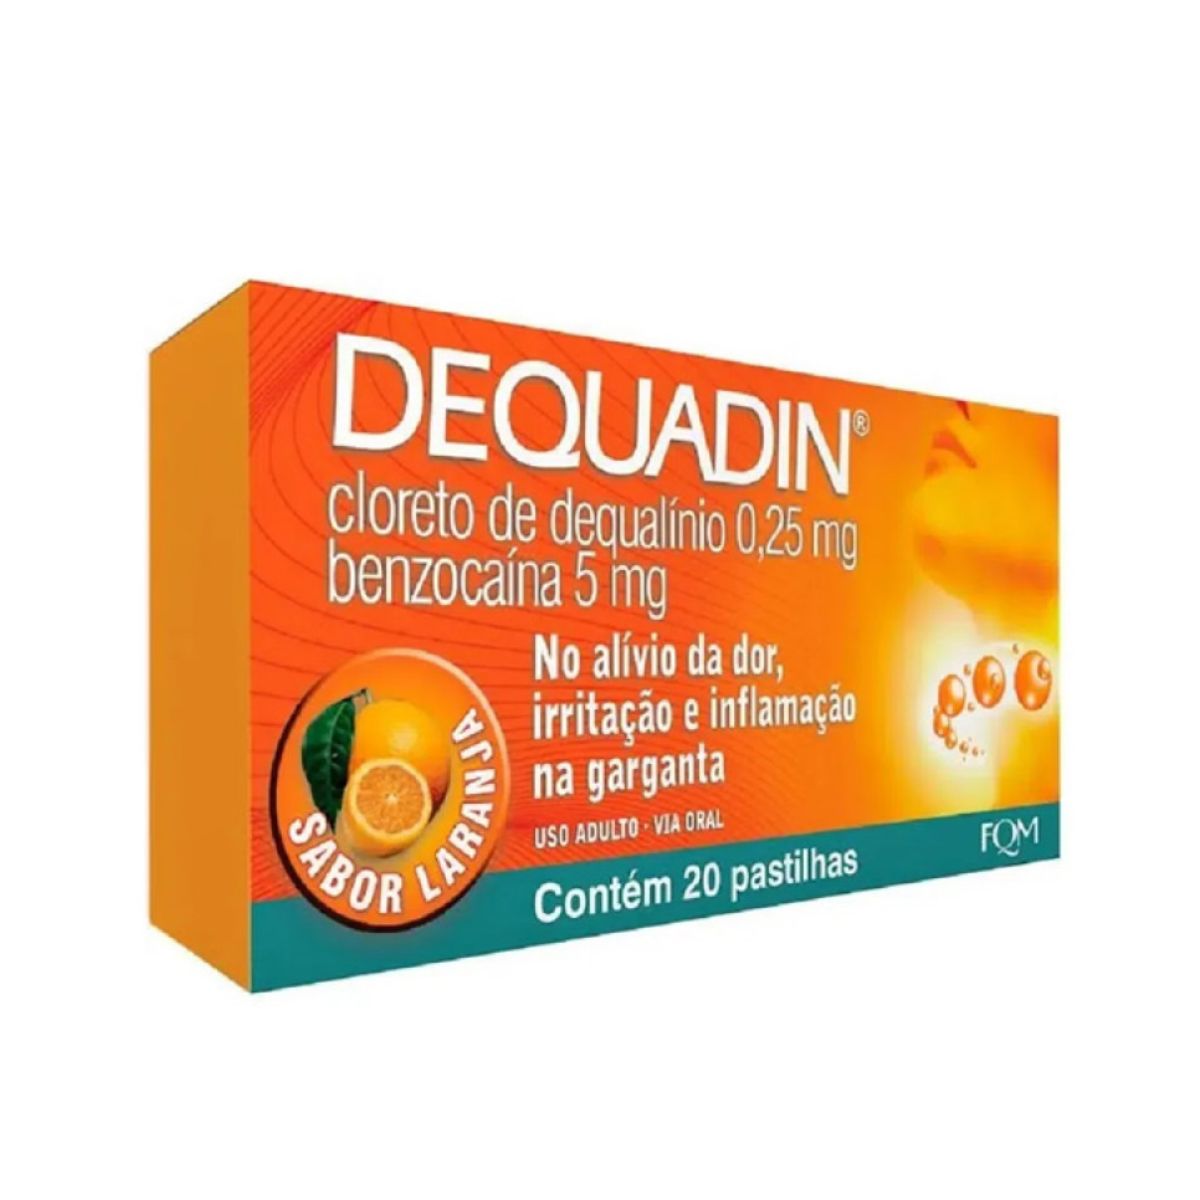 dequadin-20past-sb-laranja-1.jpg